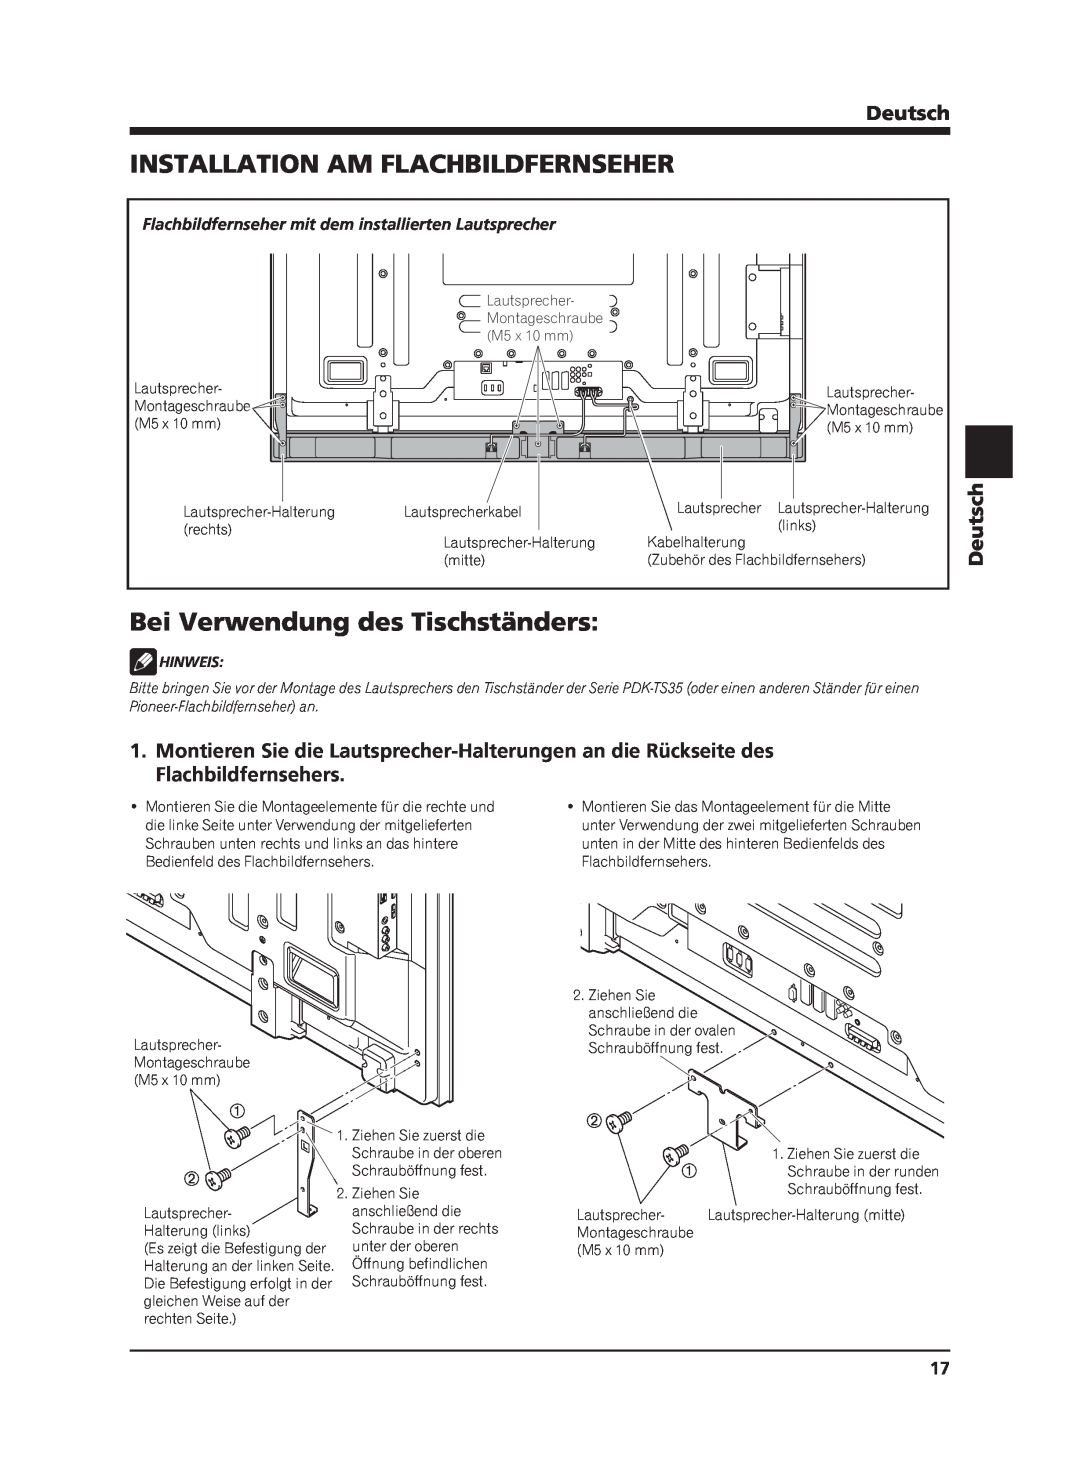 Pioneer PDP-S65 manual Installation Am Flachbildfernseher, Bei Verwendung des Tischständers, Deutsch, Hinweis 